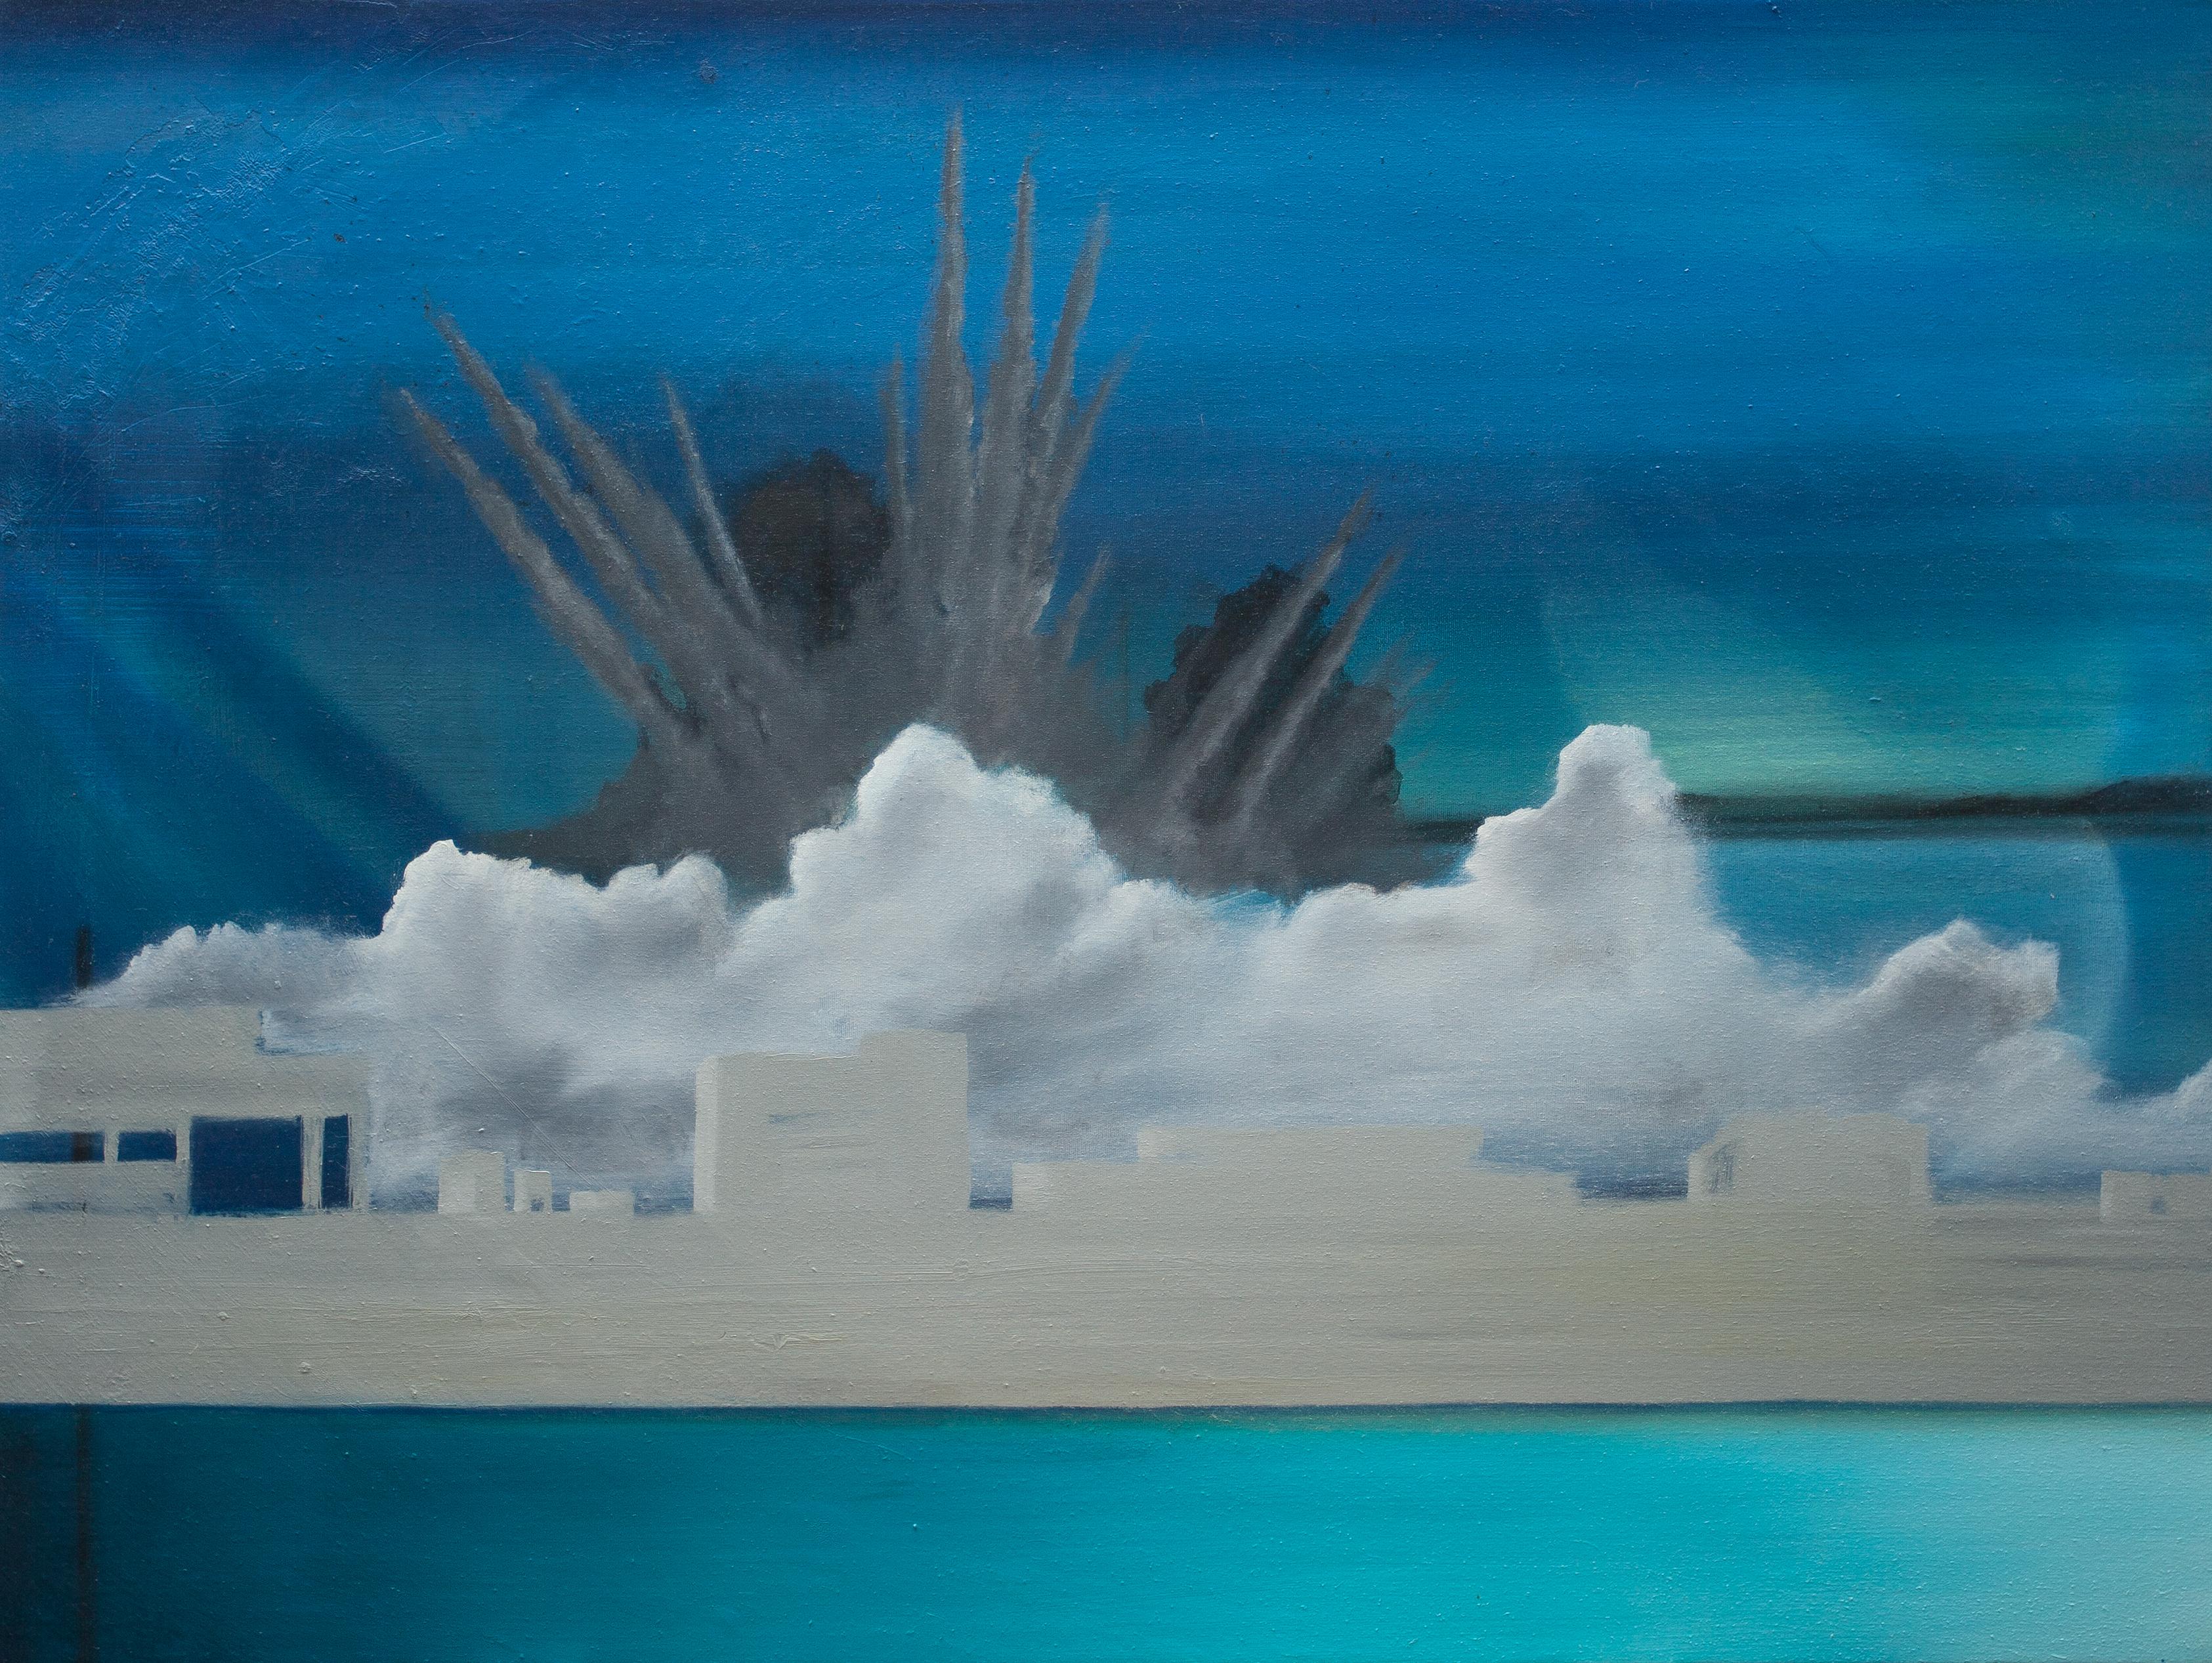 "Aleppo Water Wars" Art contemporain abstrait, huile sur toile synthétique.  - Painting de Mb Boissonnault